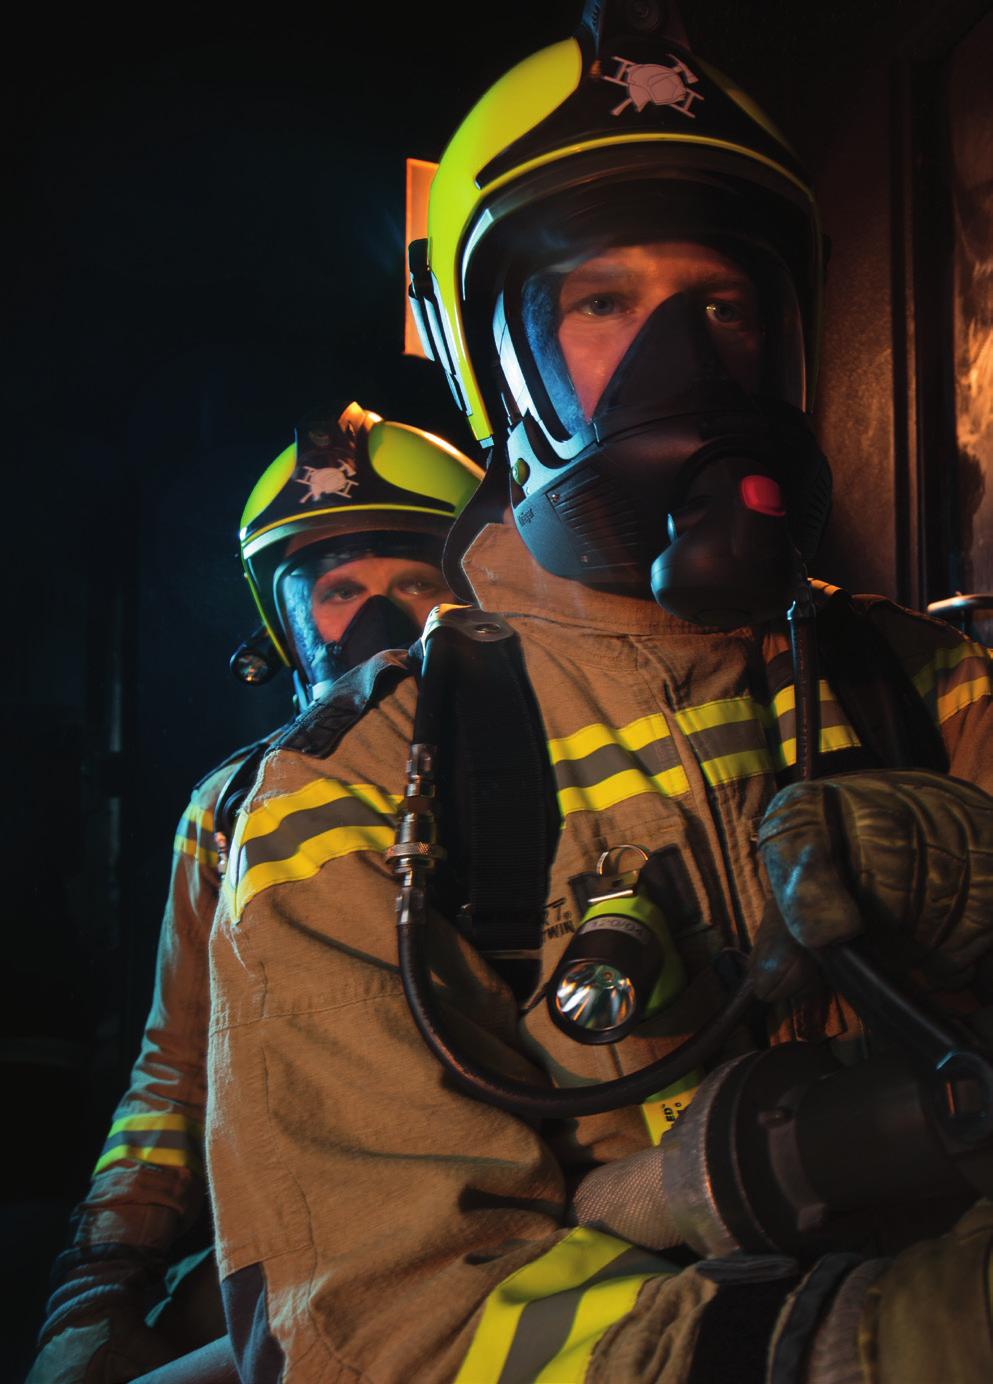 parceiro que ofereça equipamentos de qualidade, treinamento profissional seguro com meu equipamento, posso combater os incêndios com mais eficácia.